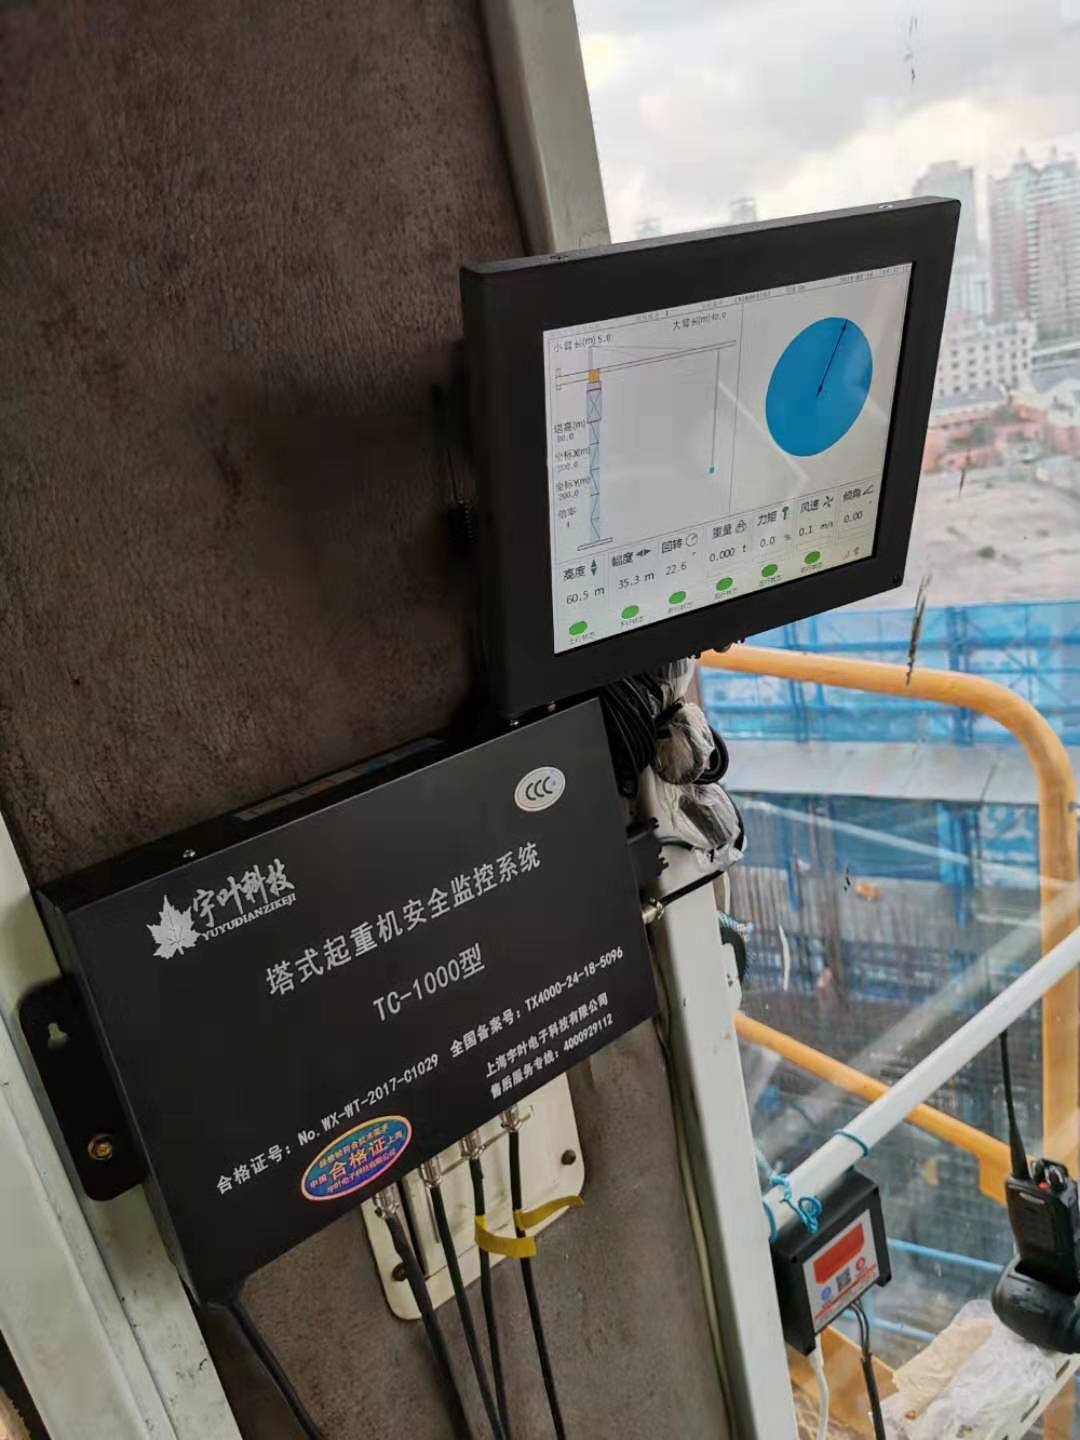 衢州塔吊黑匣子-上门安装对接平台专注建筑安全领域-塔吊黑匣子群塔防碰撞系统